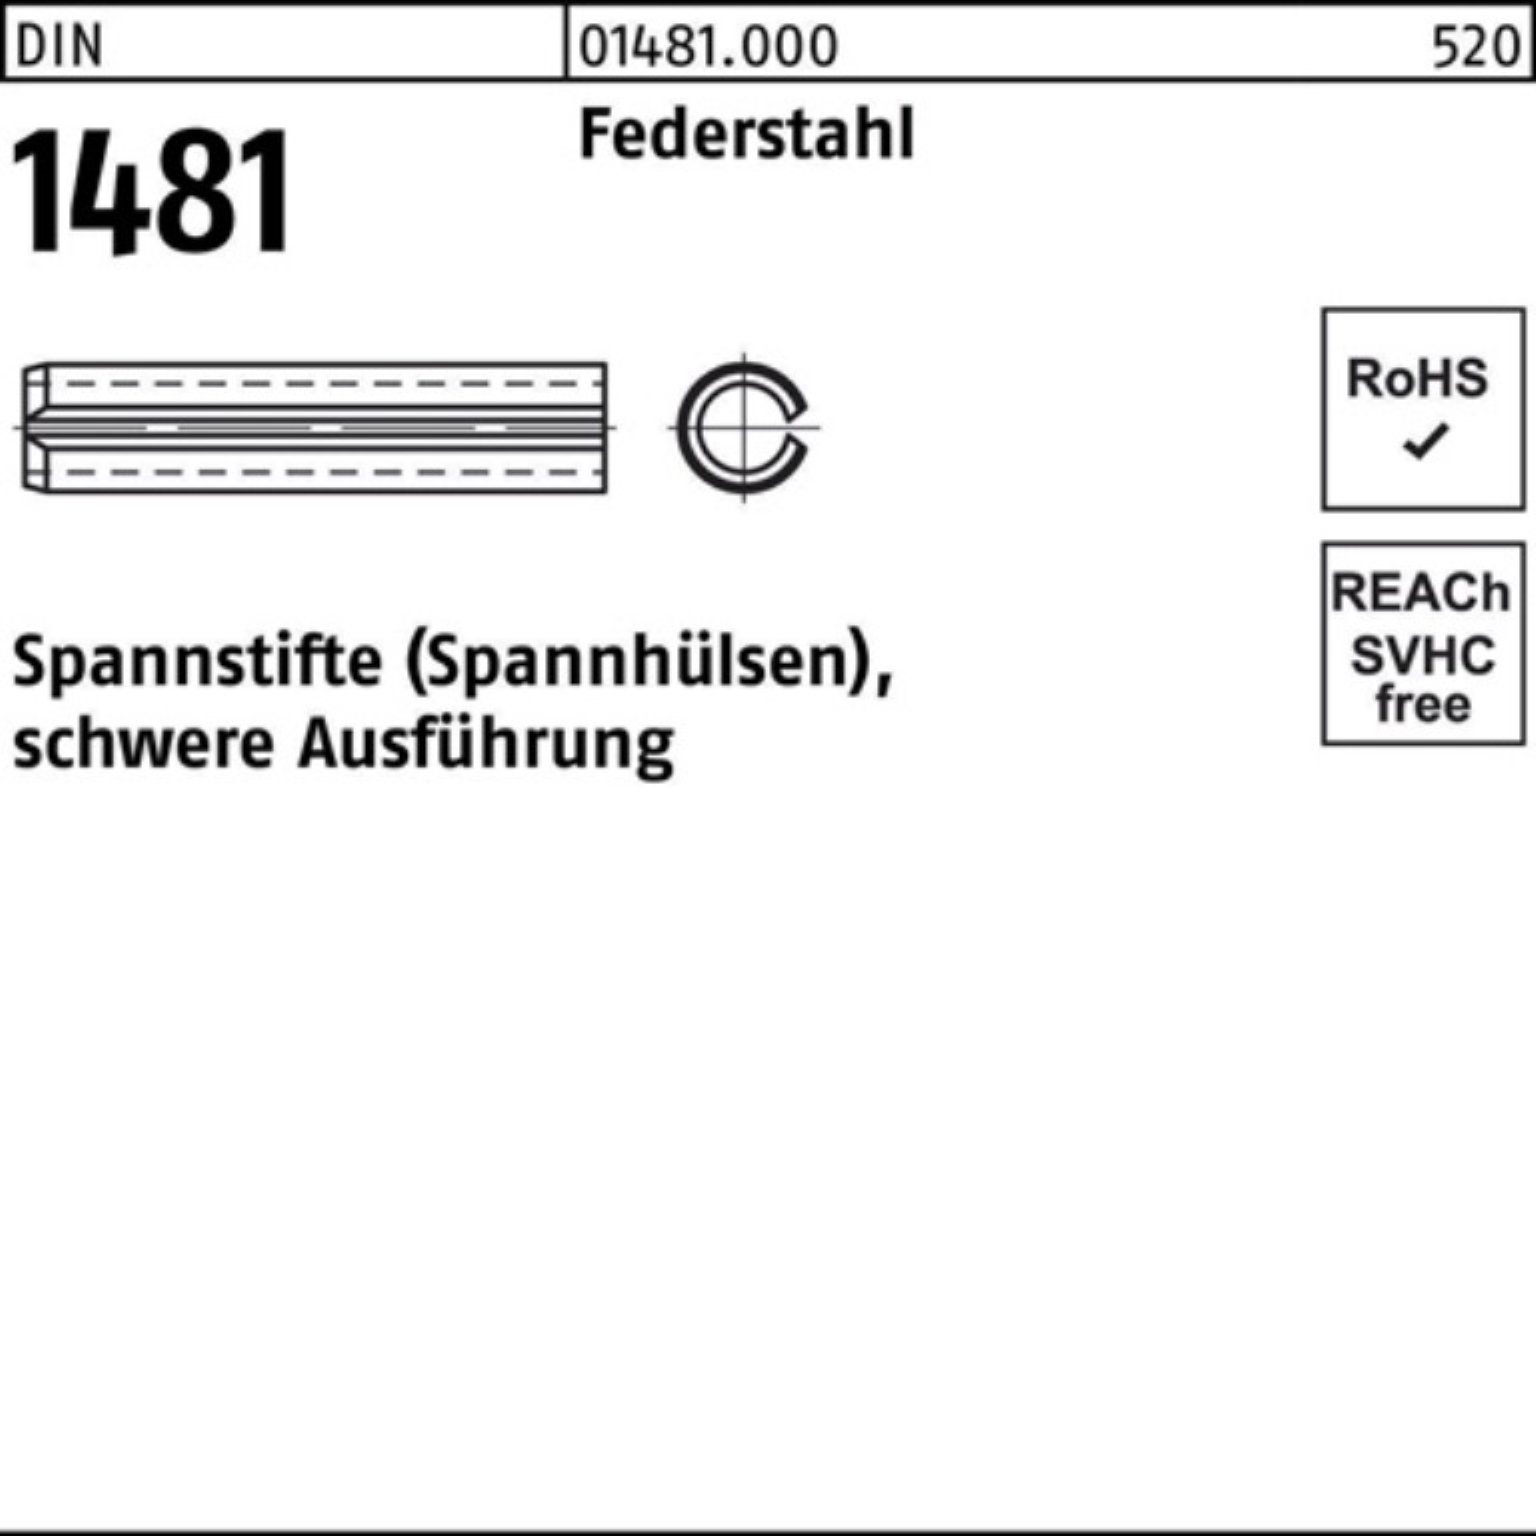 Reyher Spannstift 1000er Pack Spannstift DIN 2x 1 Federstahl 1481 16 schwere Ausführung